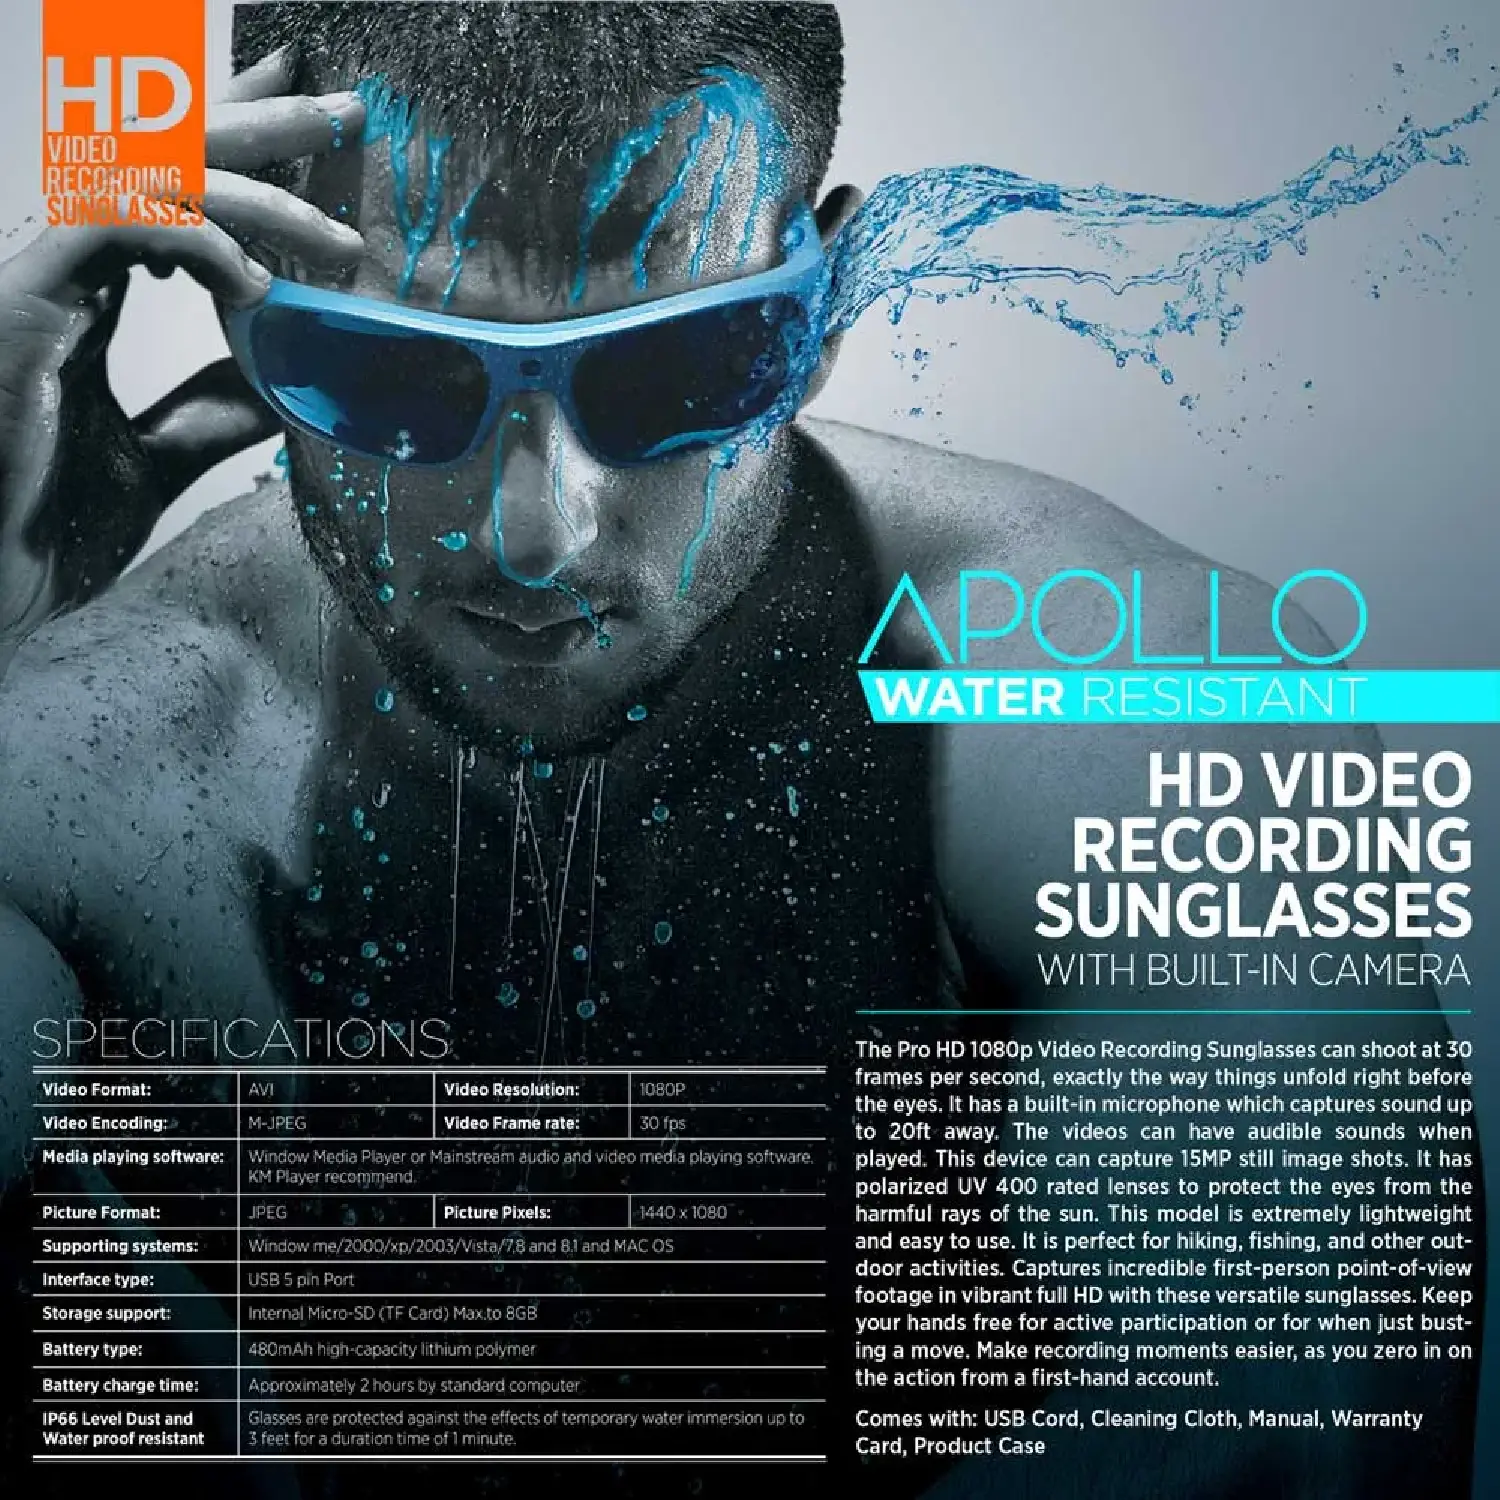 Go Vision Apollo Video Camera Sunglasses